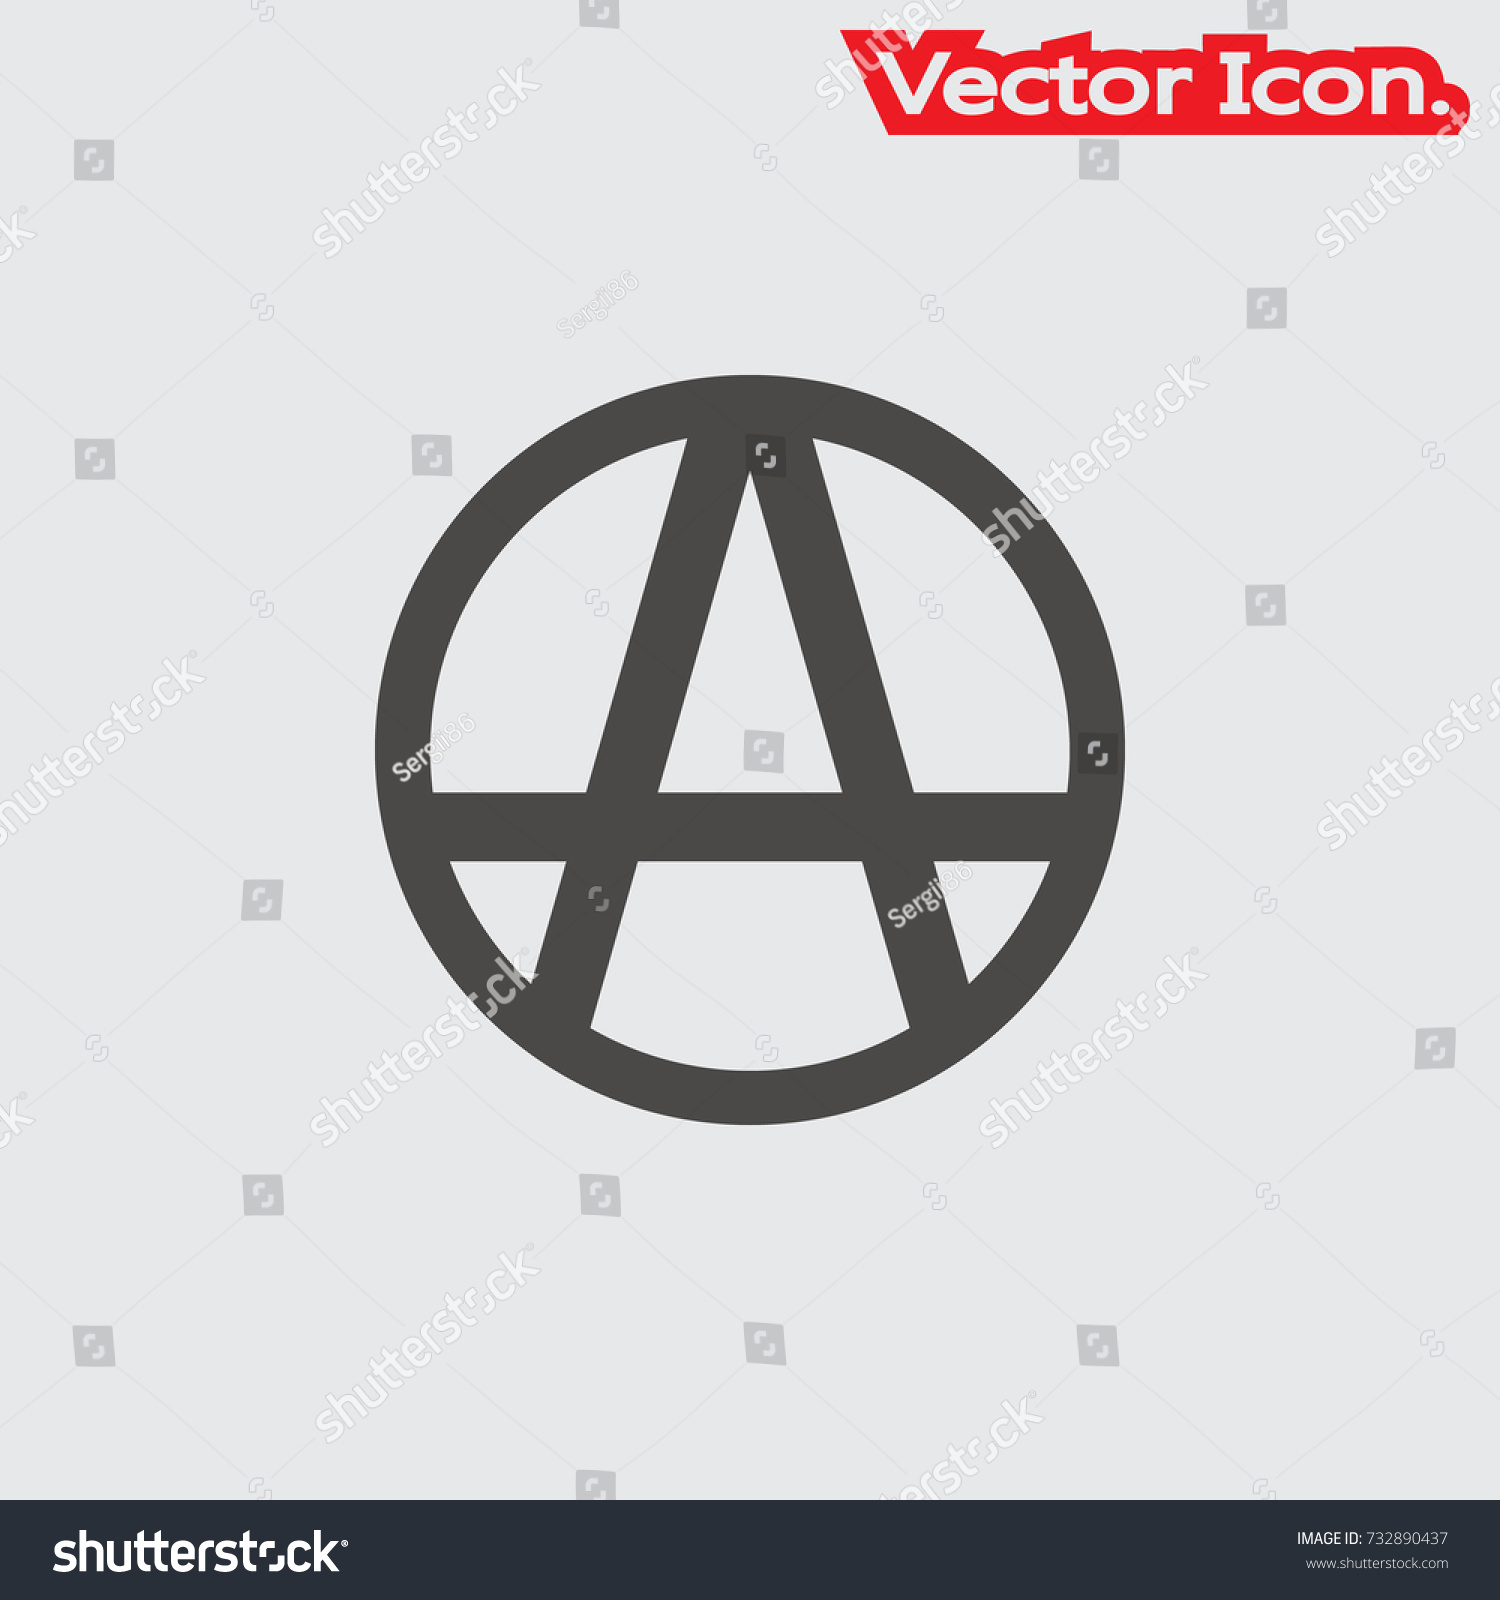 Anarchy Symbol Icon Vector Stock Vector 679415179 - 